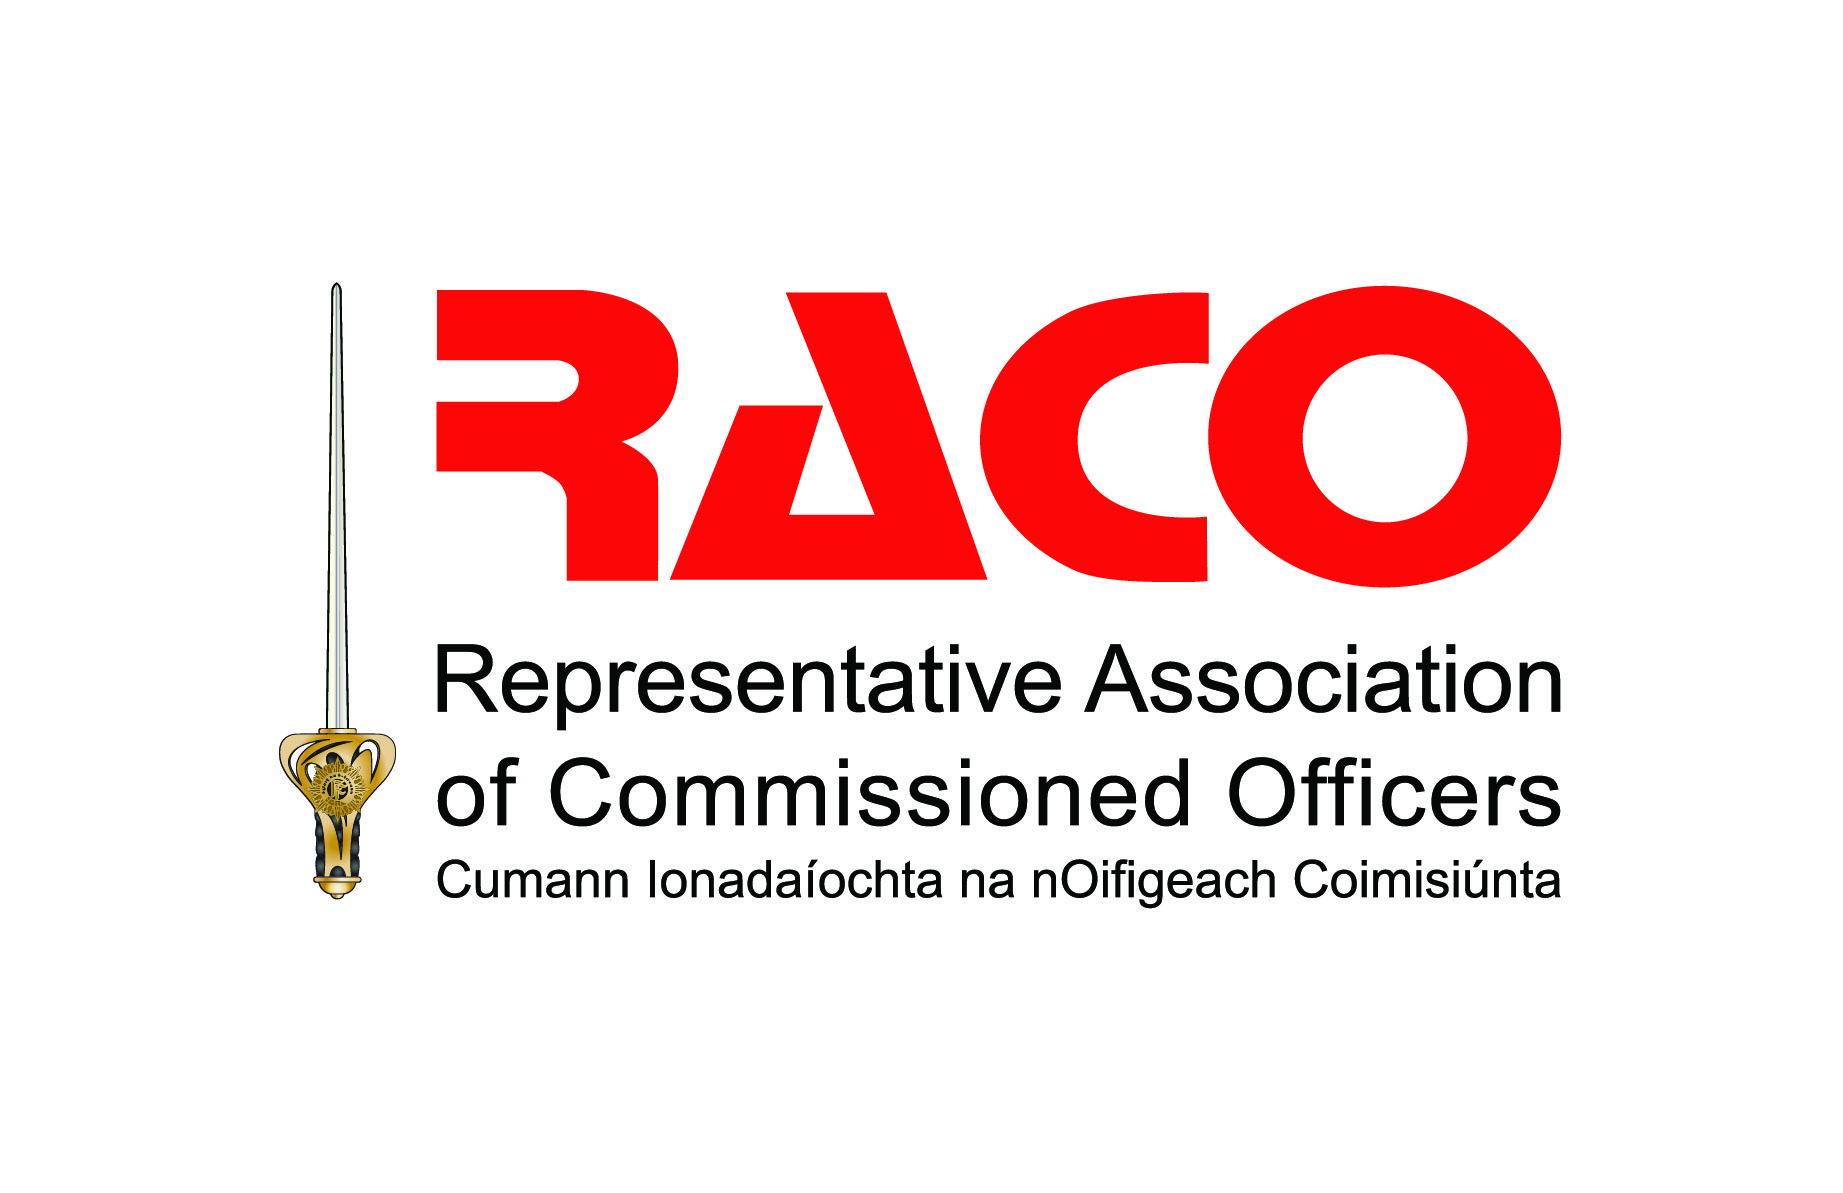 Raco Logo